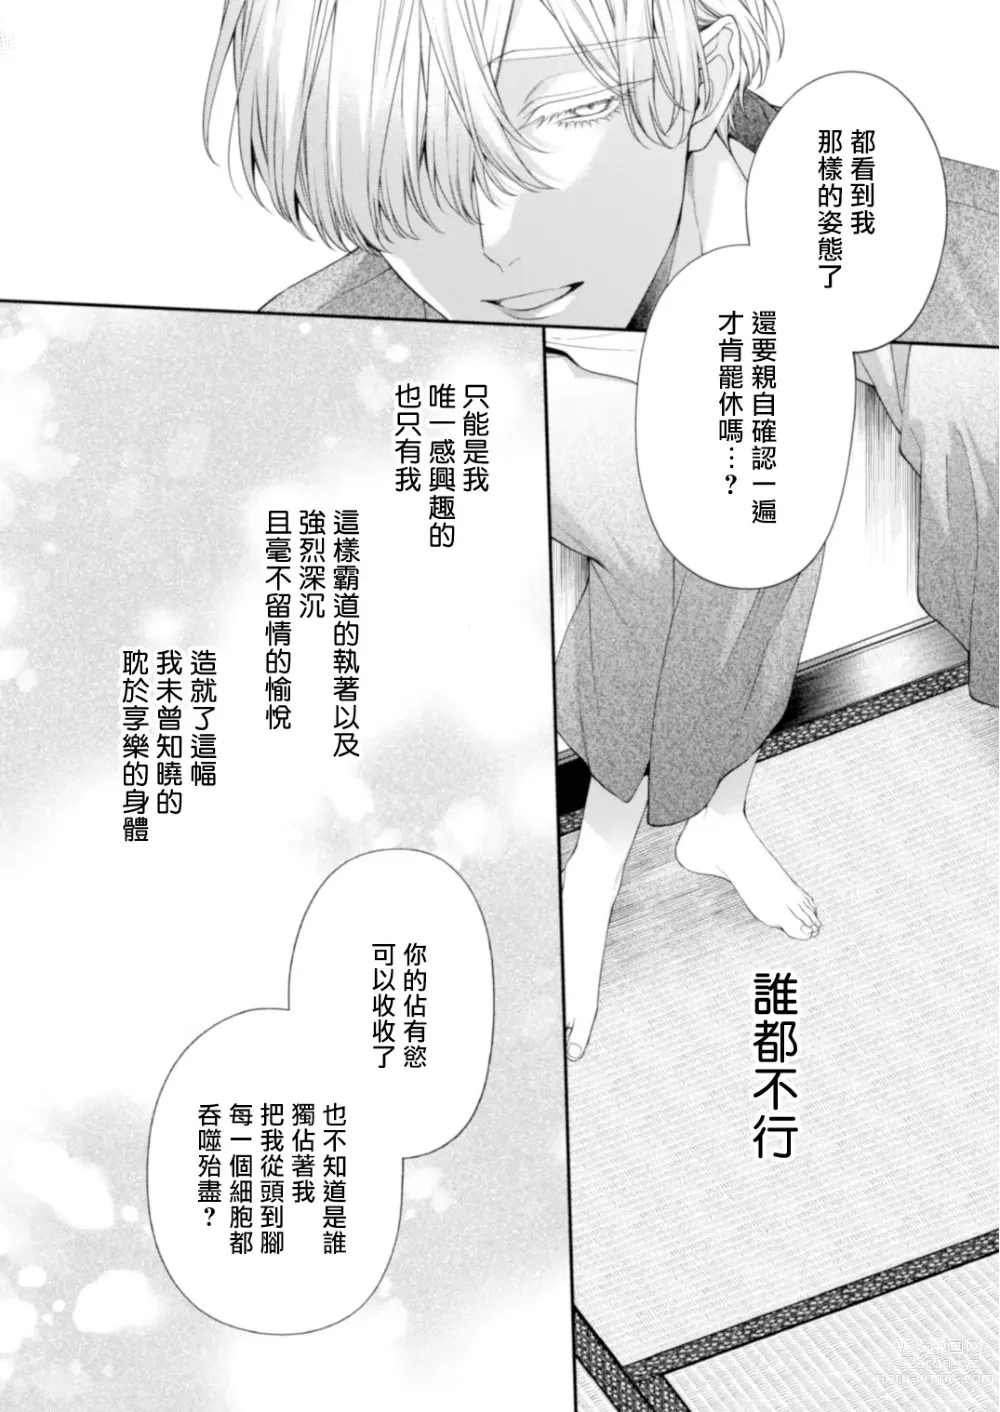 Page 77 of doujinshi 沉溺欢愉地狱 03